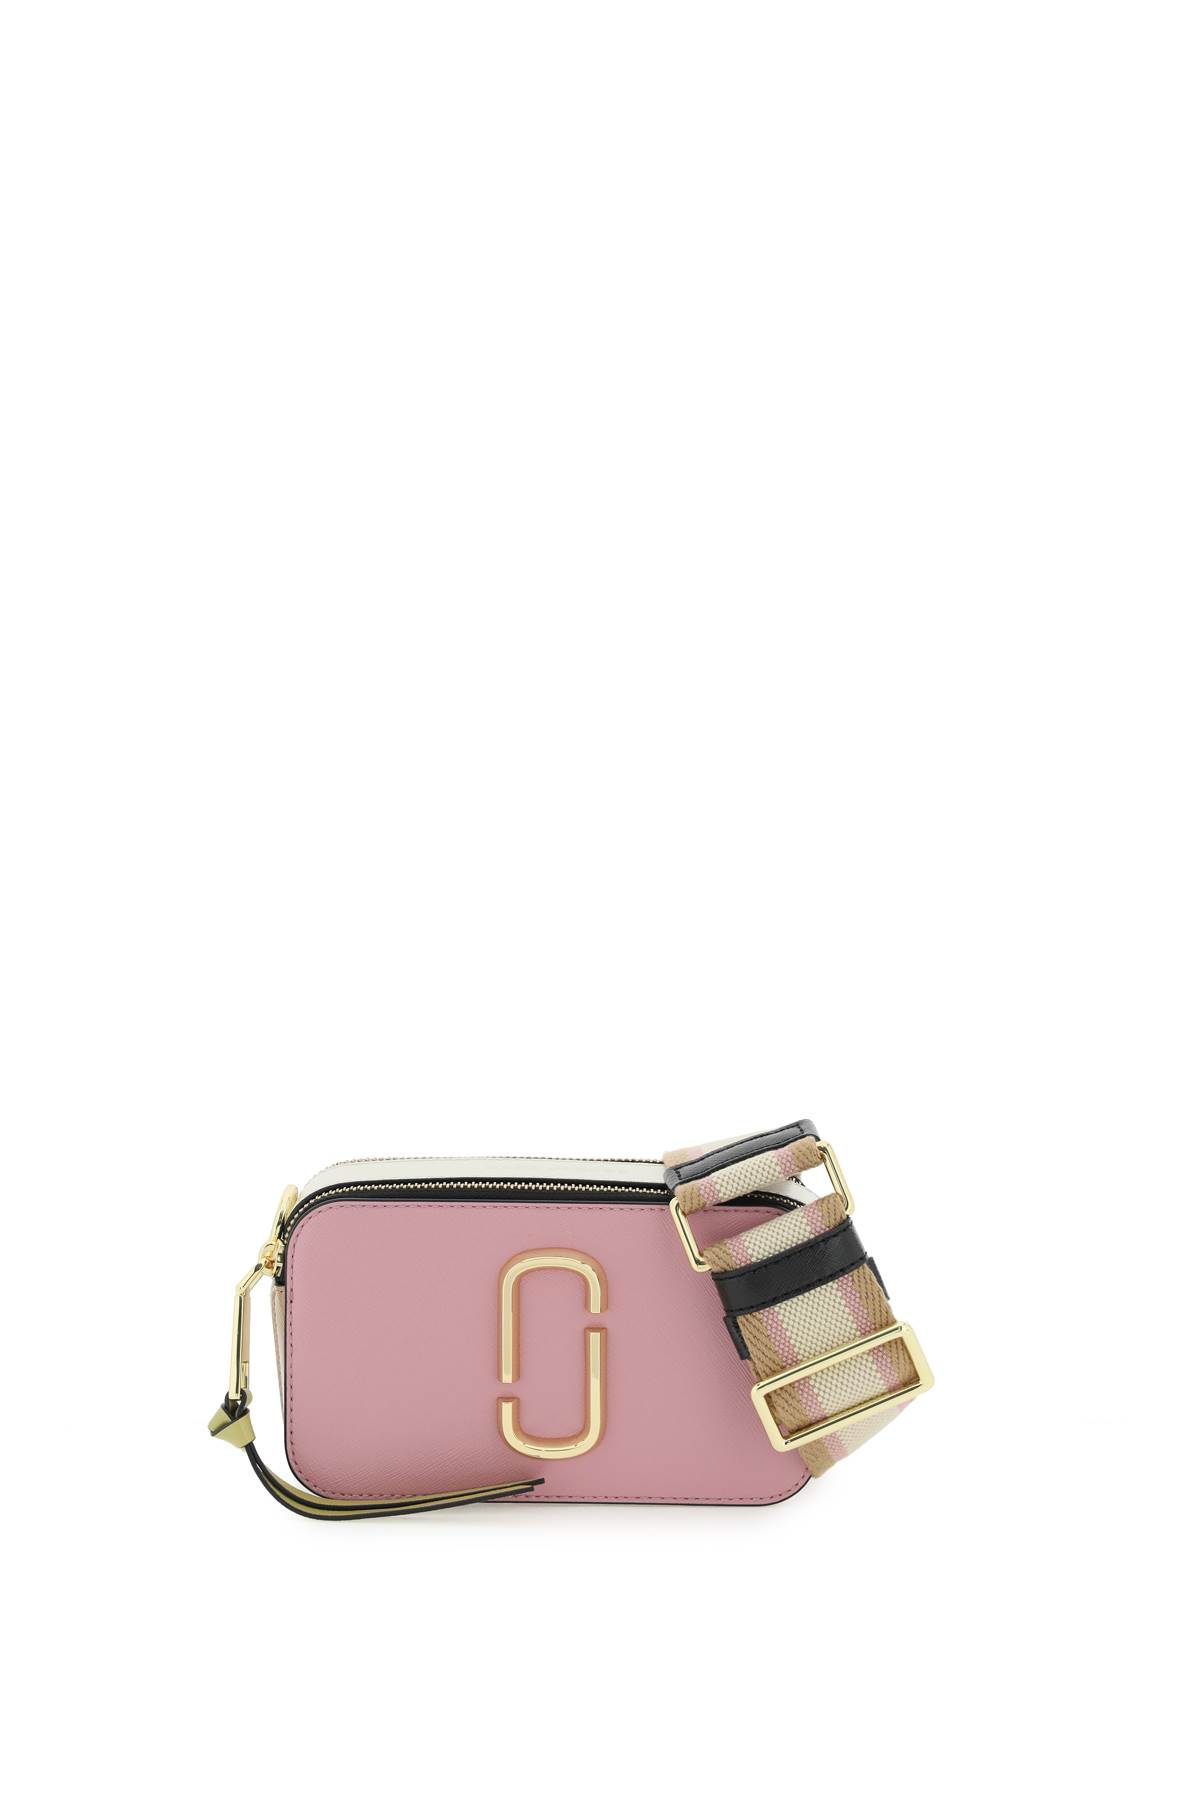 Marc Jacobs Pink & Green 'The Snapshot' Shoulder Bag